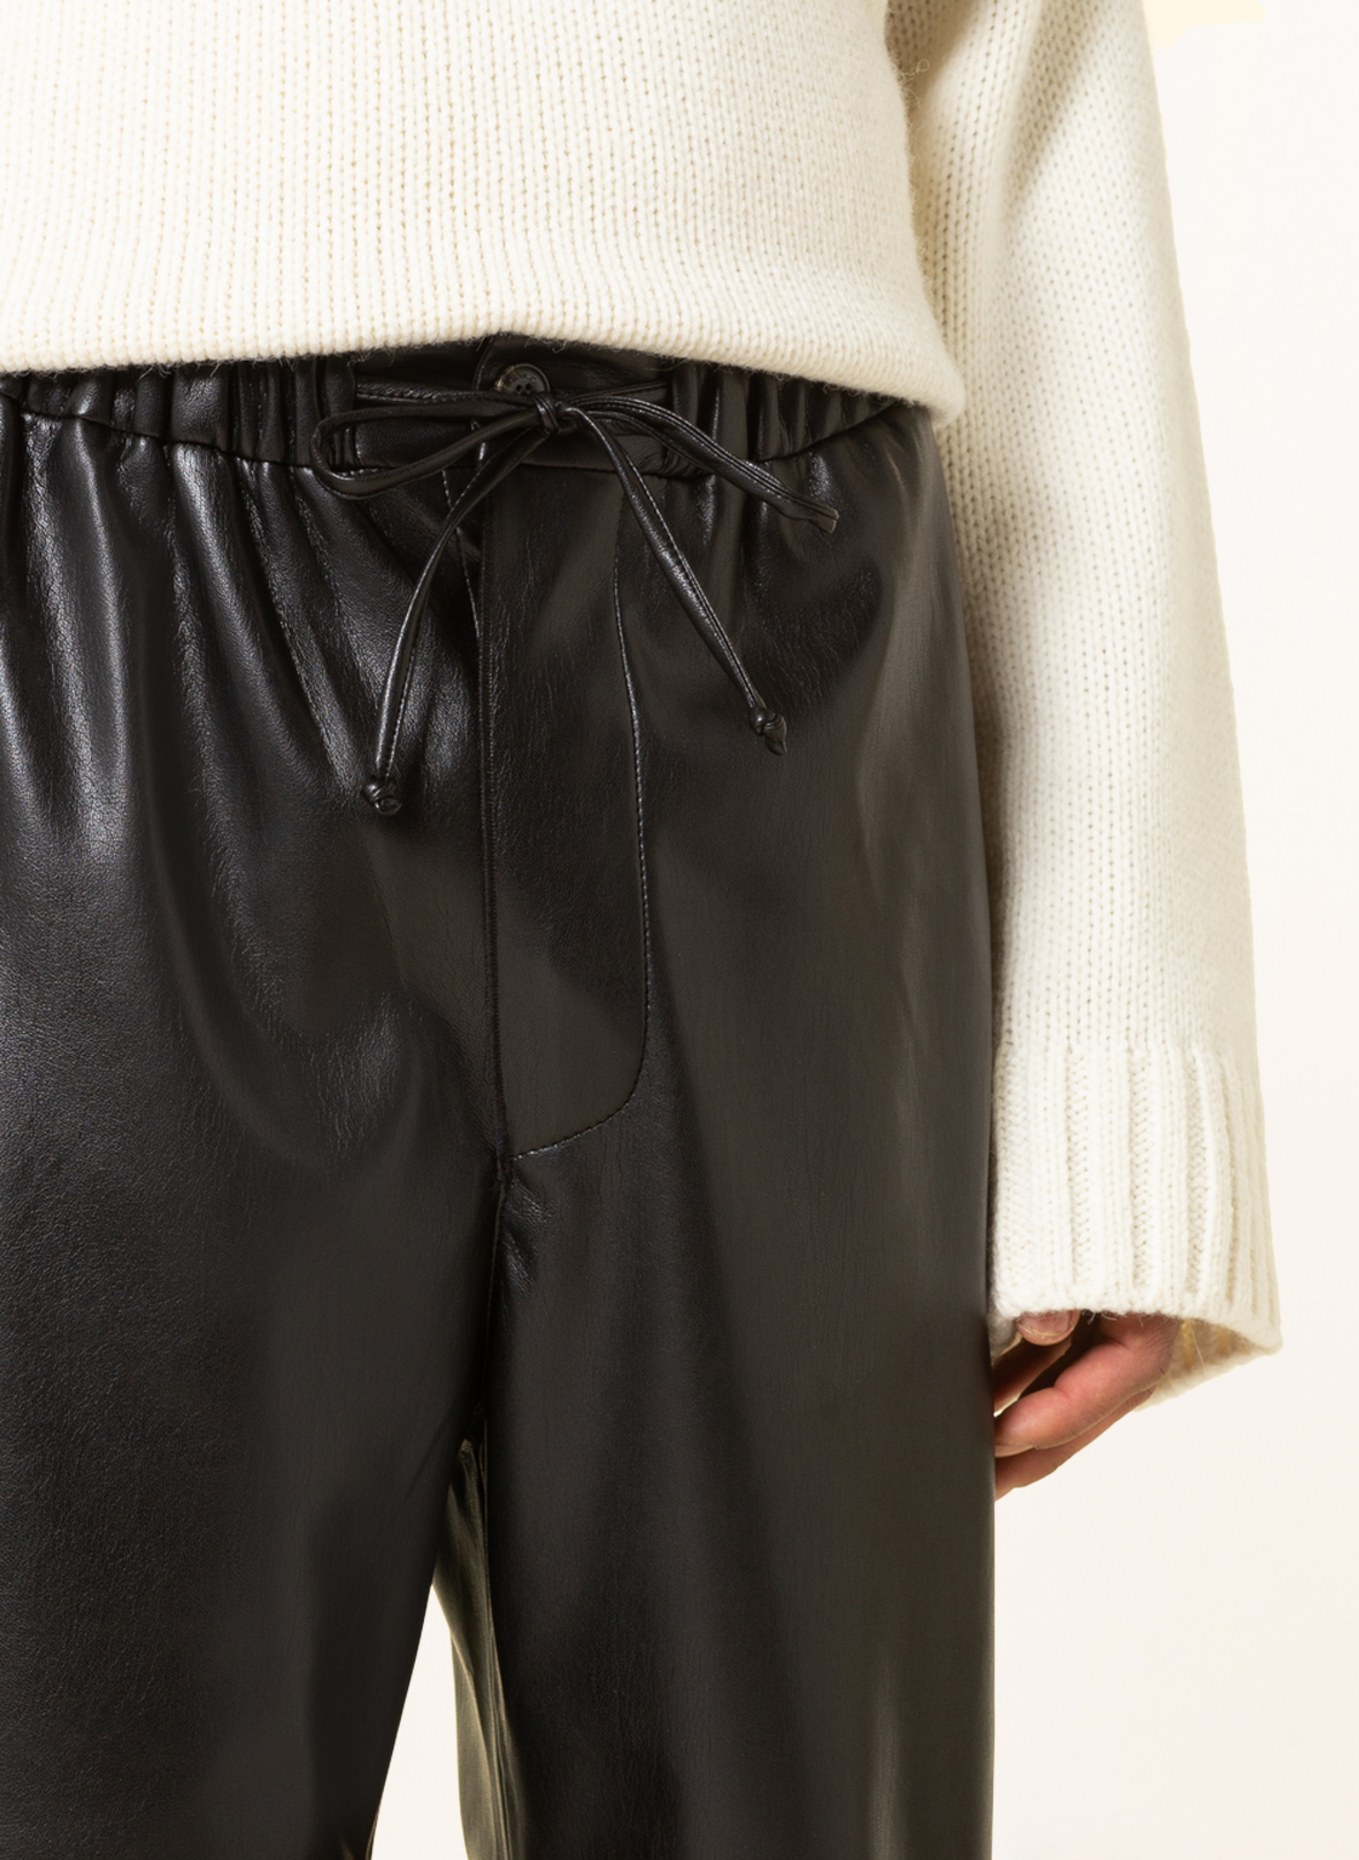 Nanushka Trousers JAIN regular fit in leather look, Color: BLACK (Image 5)